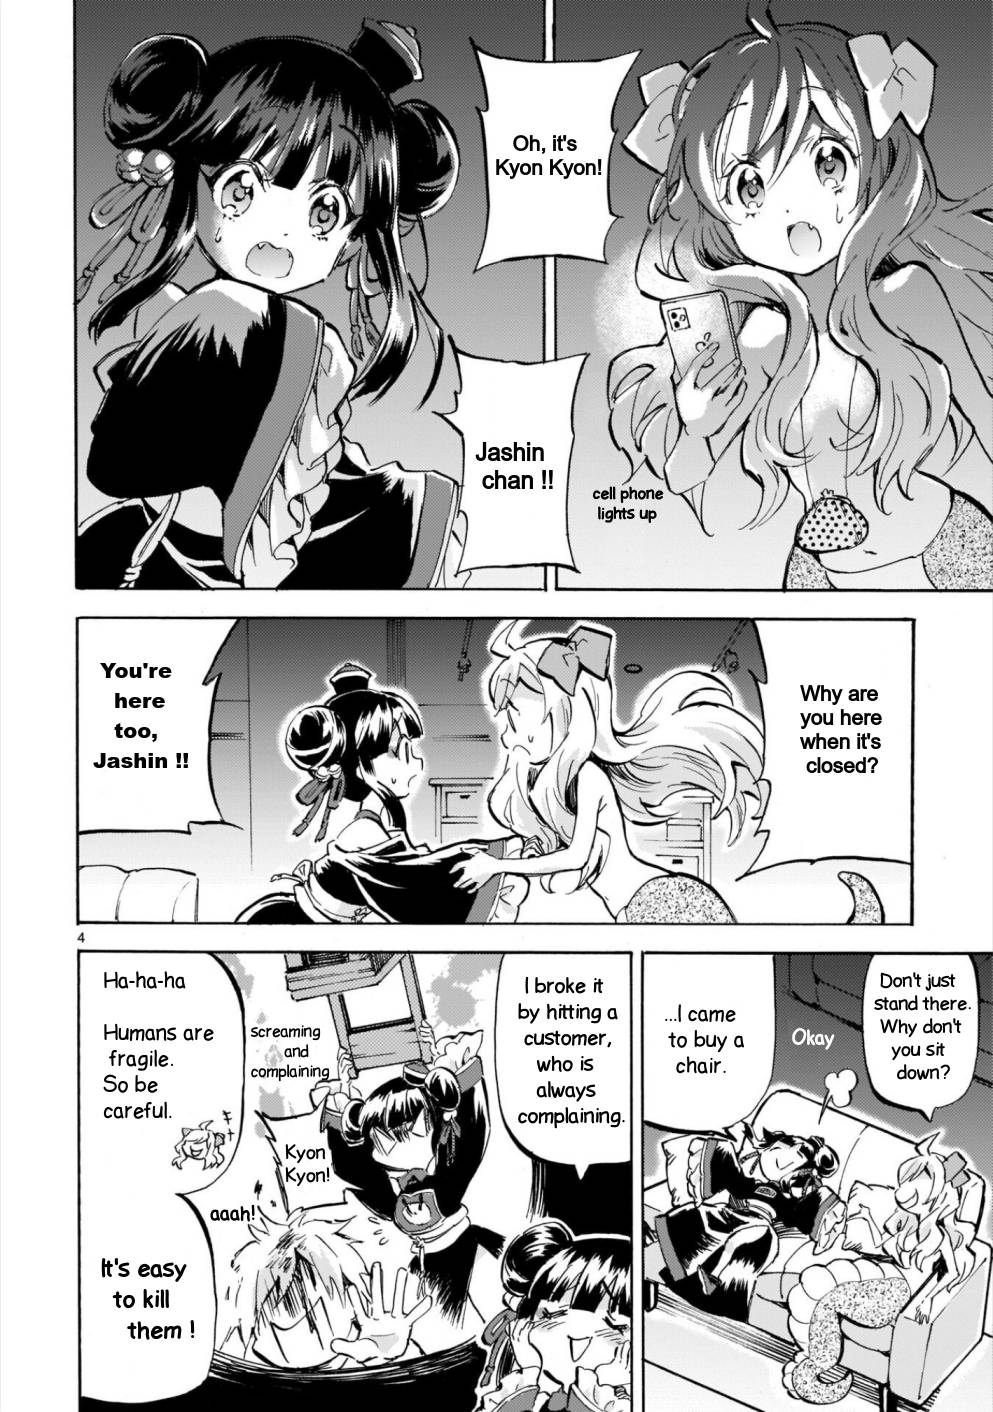 Jashin-chan Dropkick chapter 181 page 4